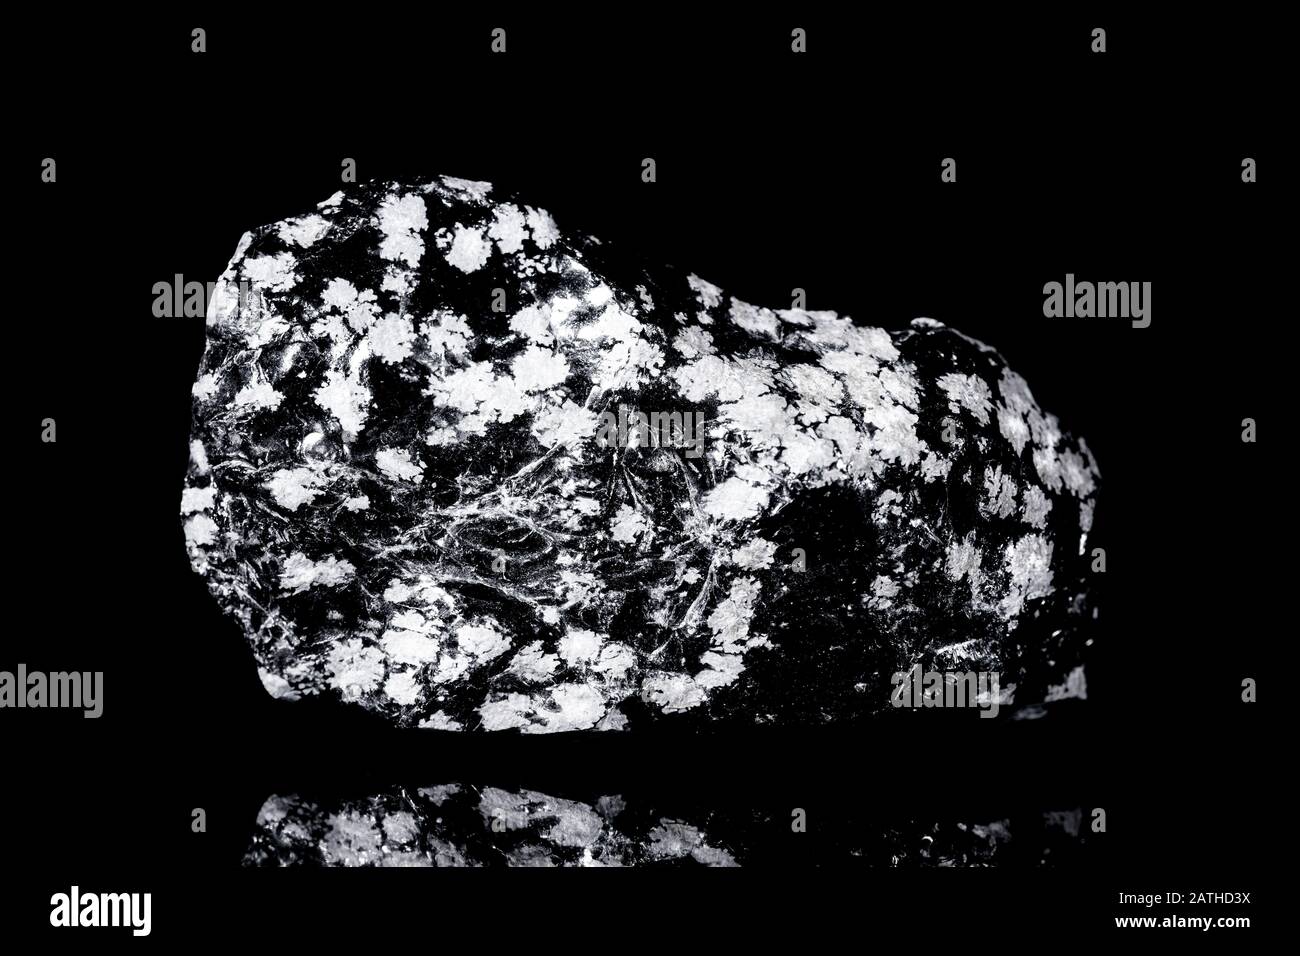 Verre volcanique obsidienne flocon de neige brut devant le fond noir, la minéralogie et la géologie Banque D'Images